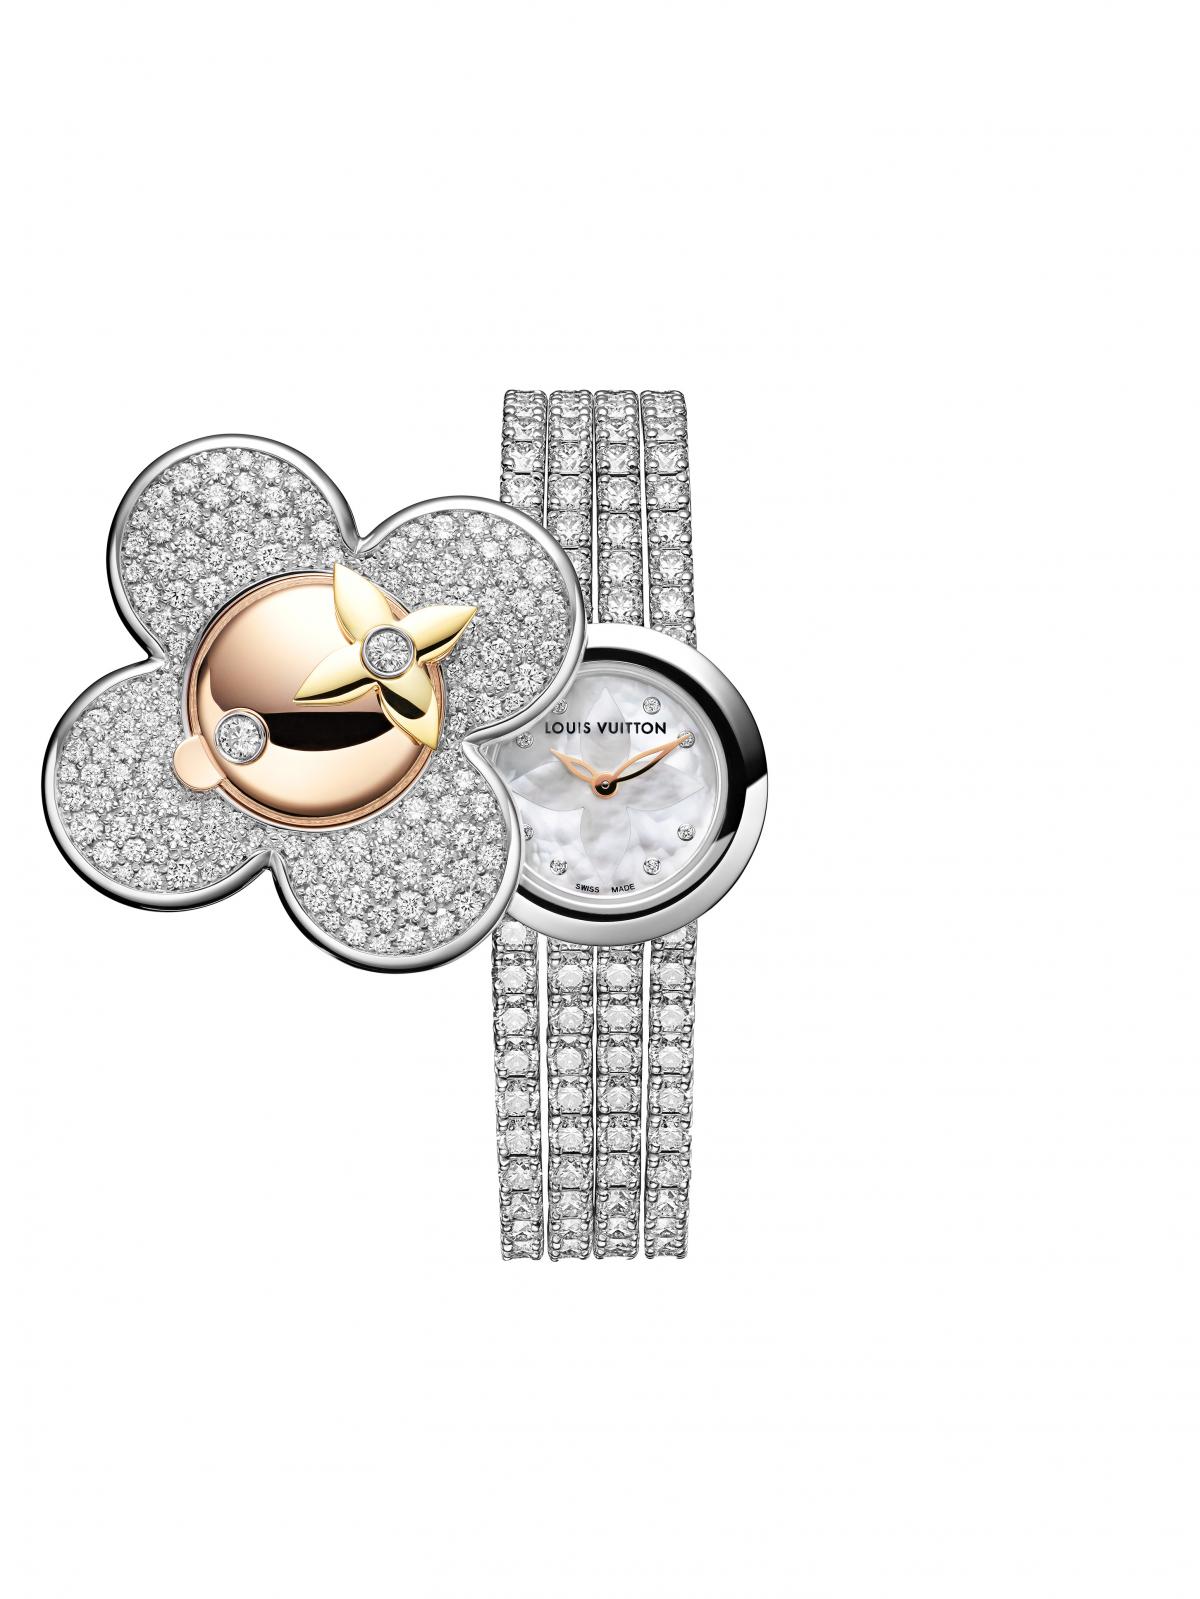 Louis Vuitton präsentiert auf der Watches & Wonders 2021 die